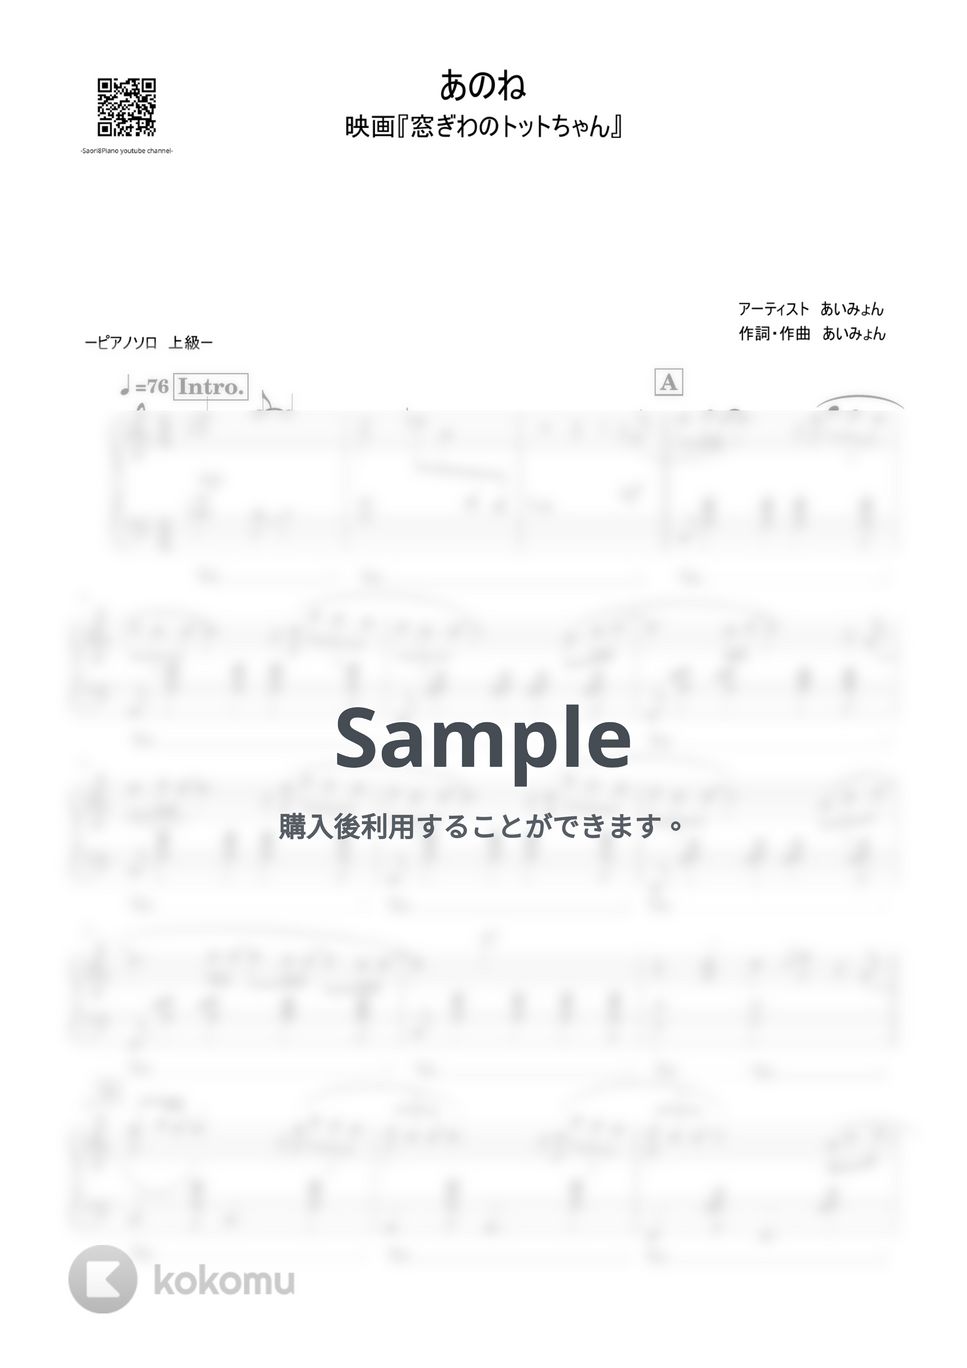 あいみょん - あのね (窓ぎわのトットちゃん/上級レベル) by Saori8Piano